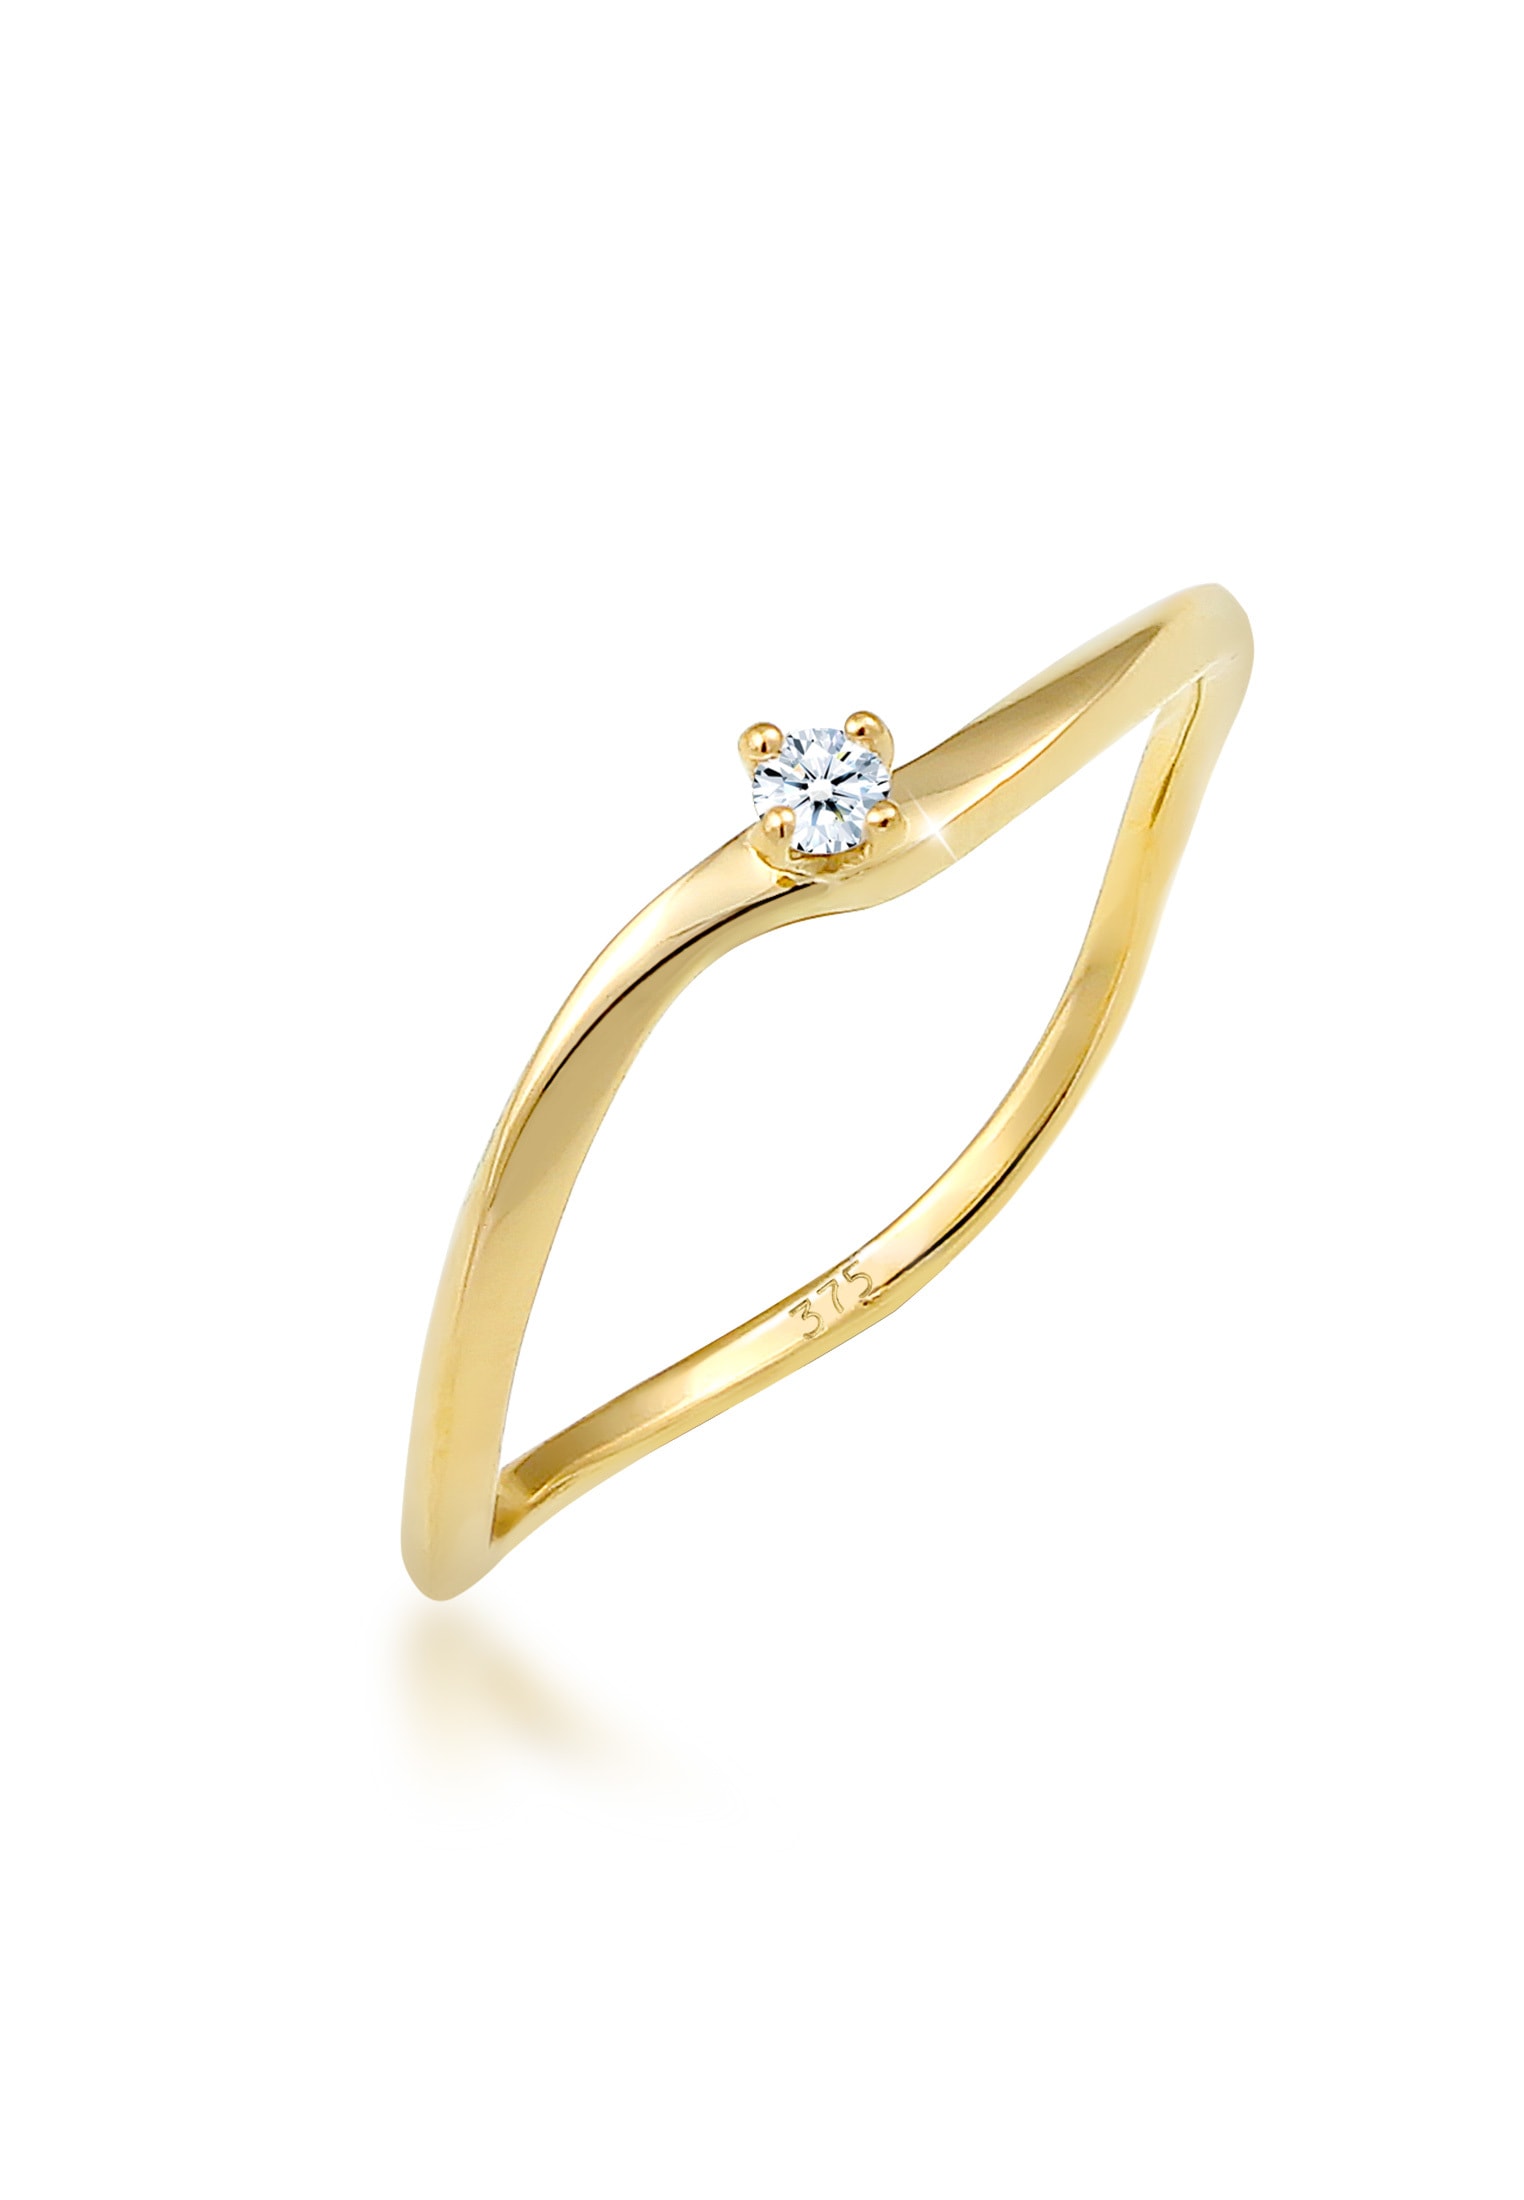 Verlobungsring »Verlobung Welle Diamant (0.03 ct.) 375 Gelbgold«